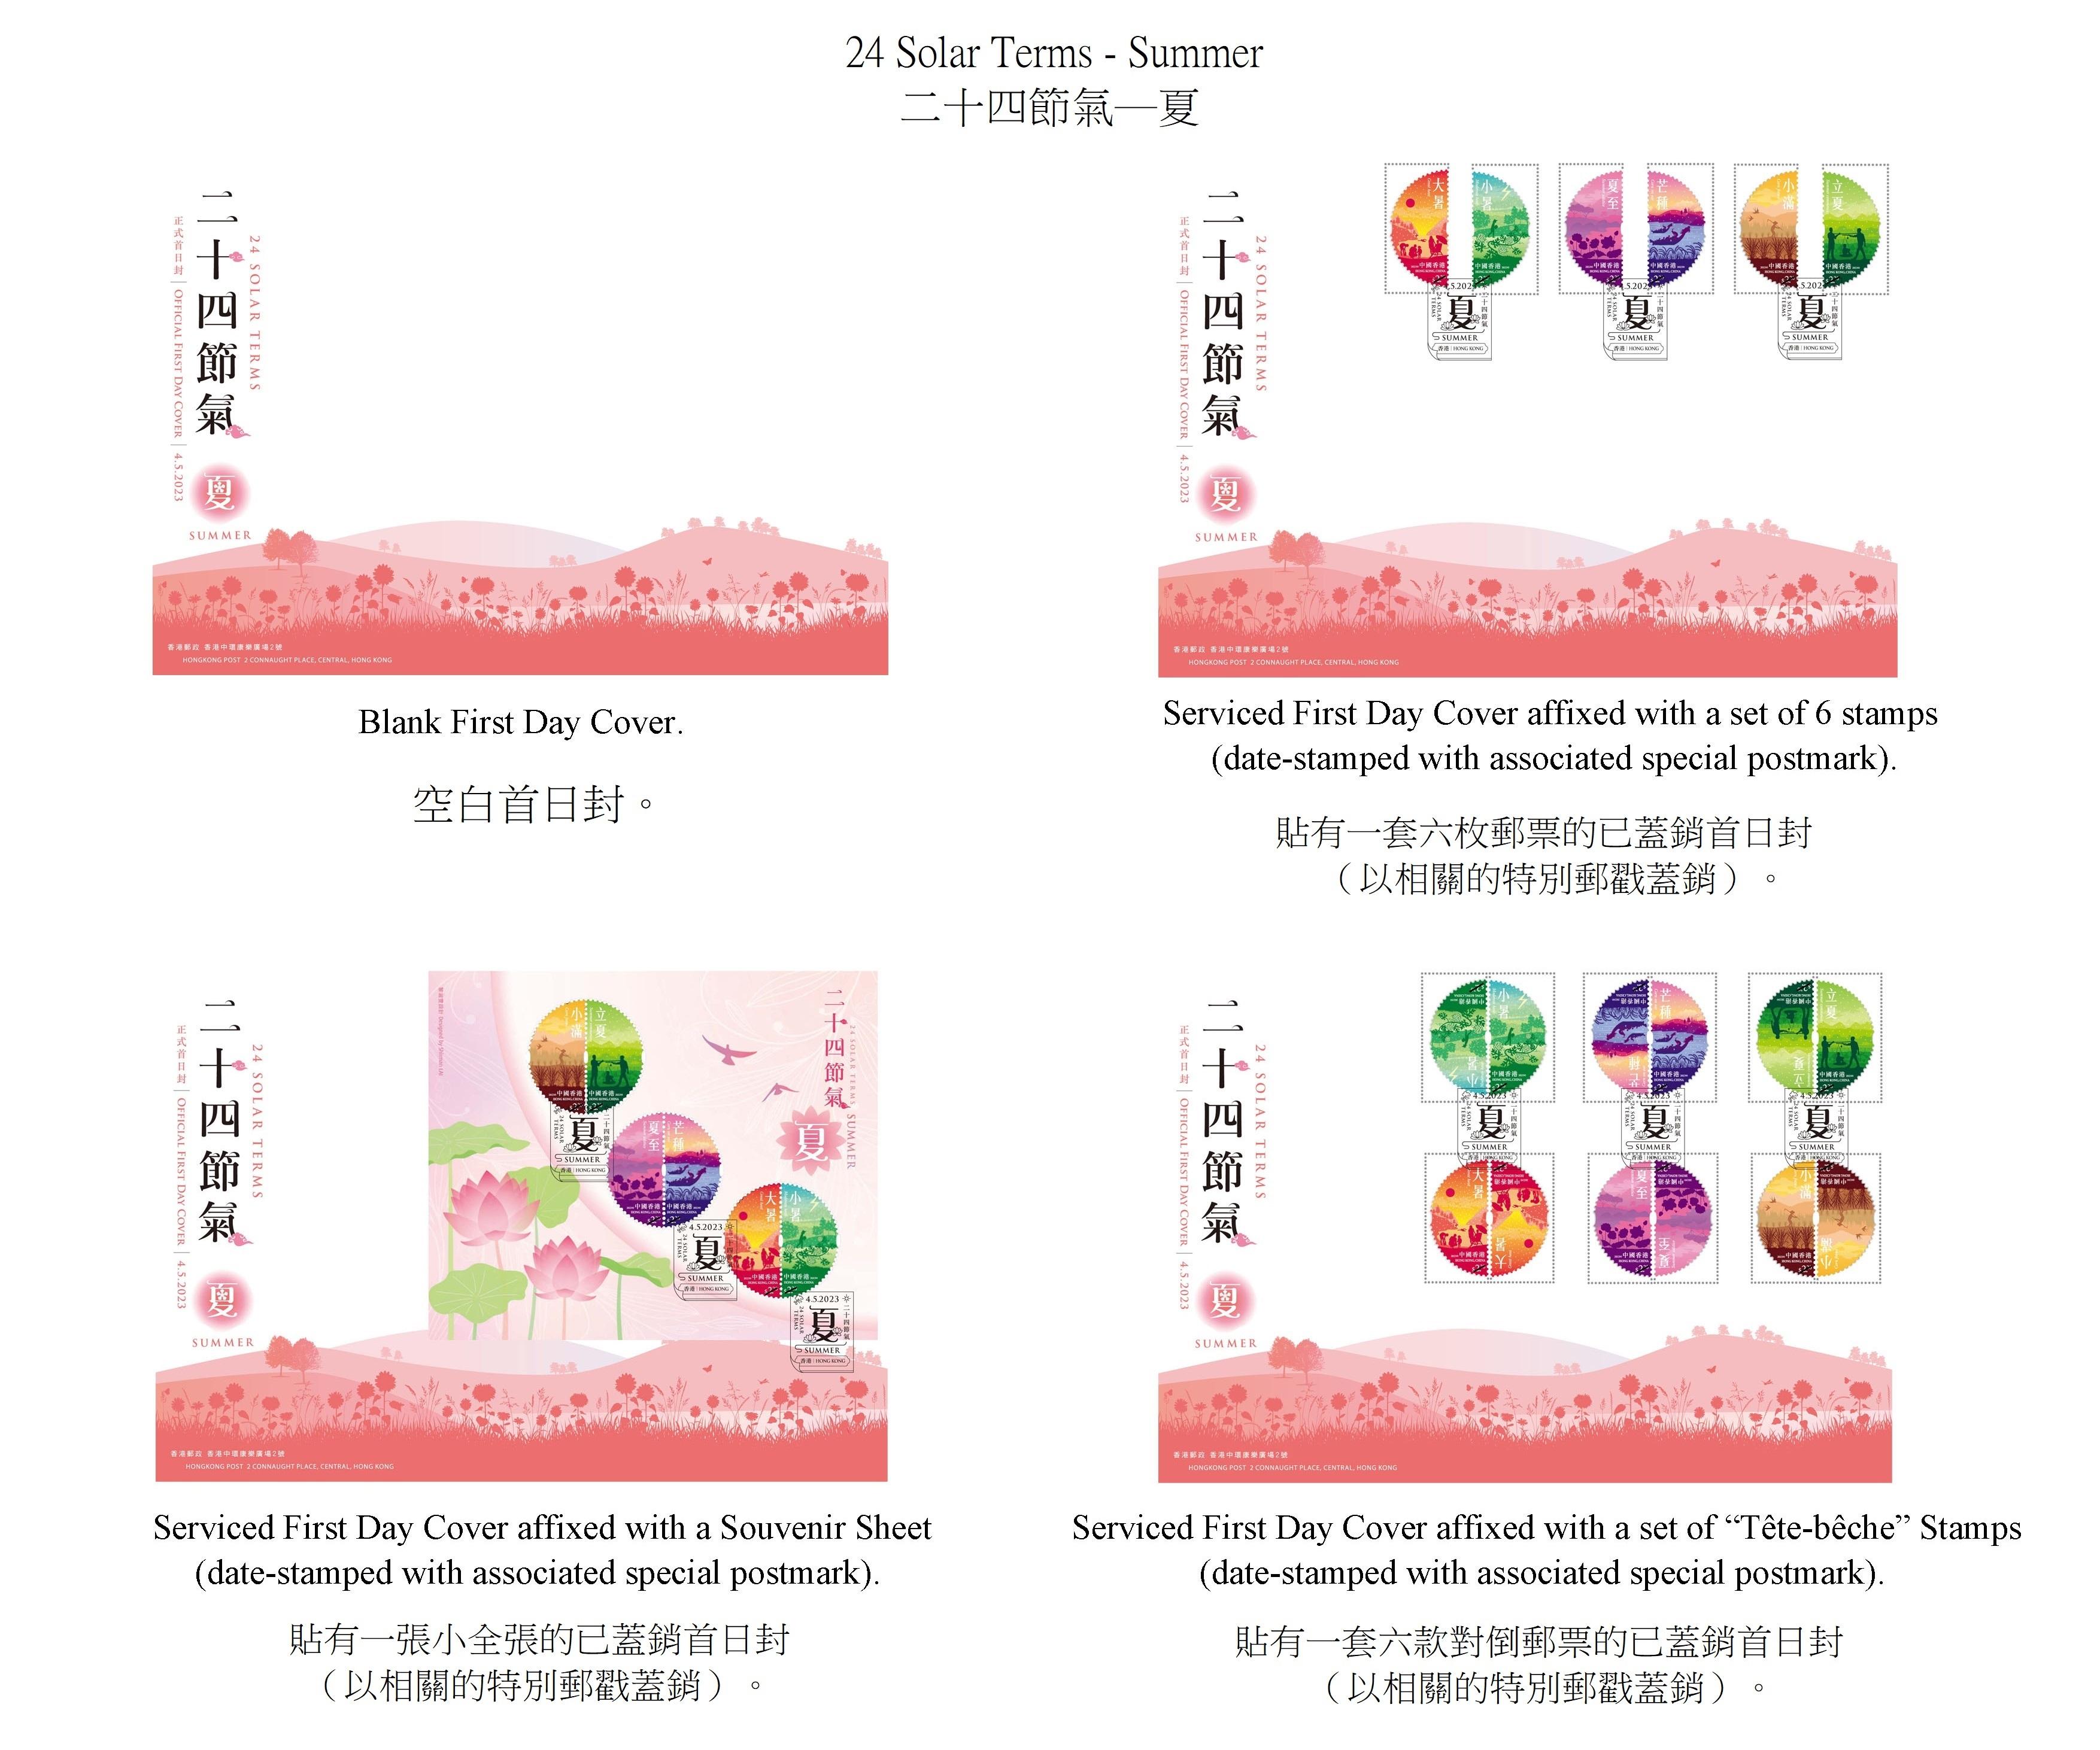 香港邮政五月四日（星期四）发行以「二十四节气──夏」为题的特别邮票及相关集邮品。图示首日封。